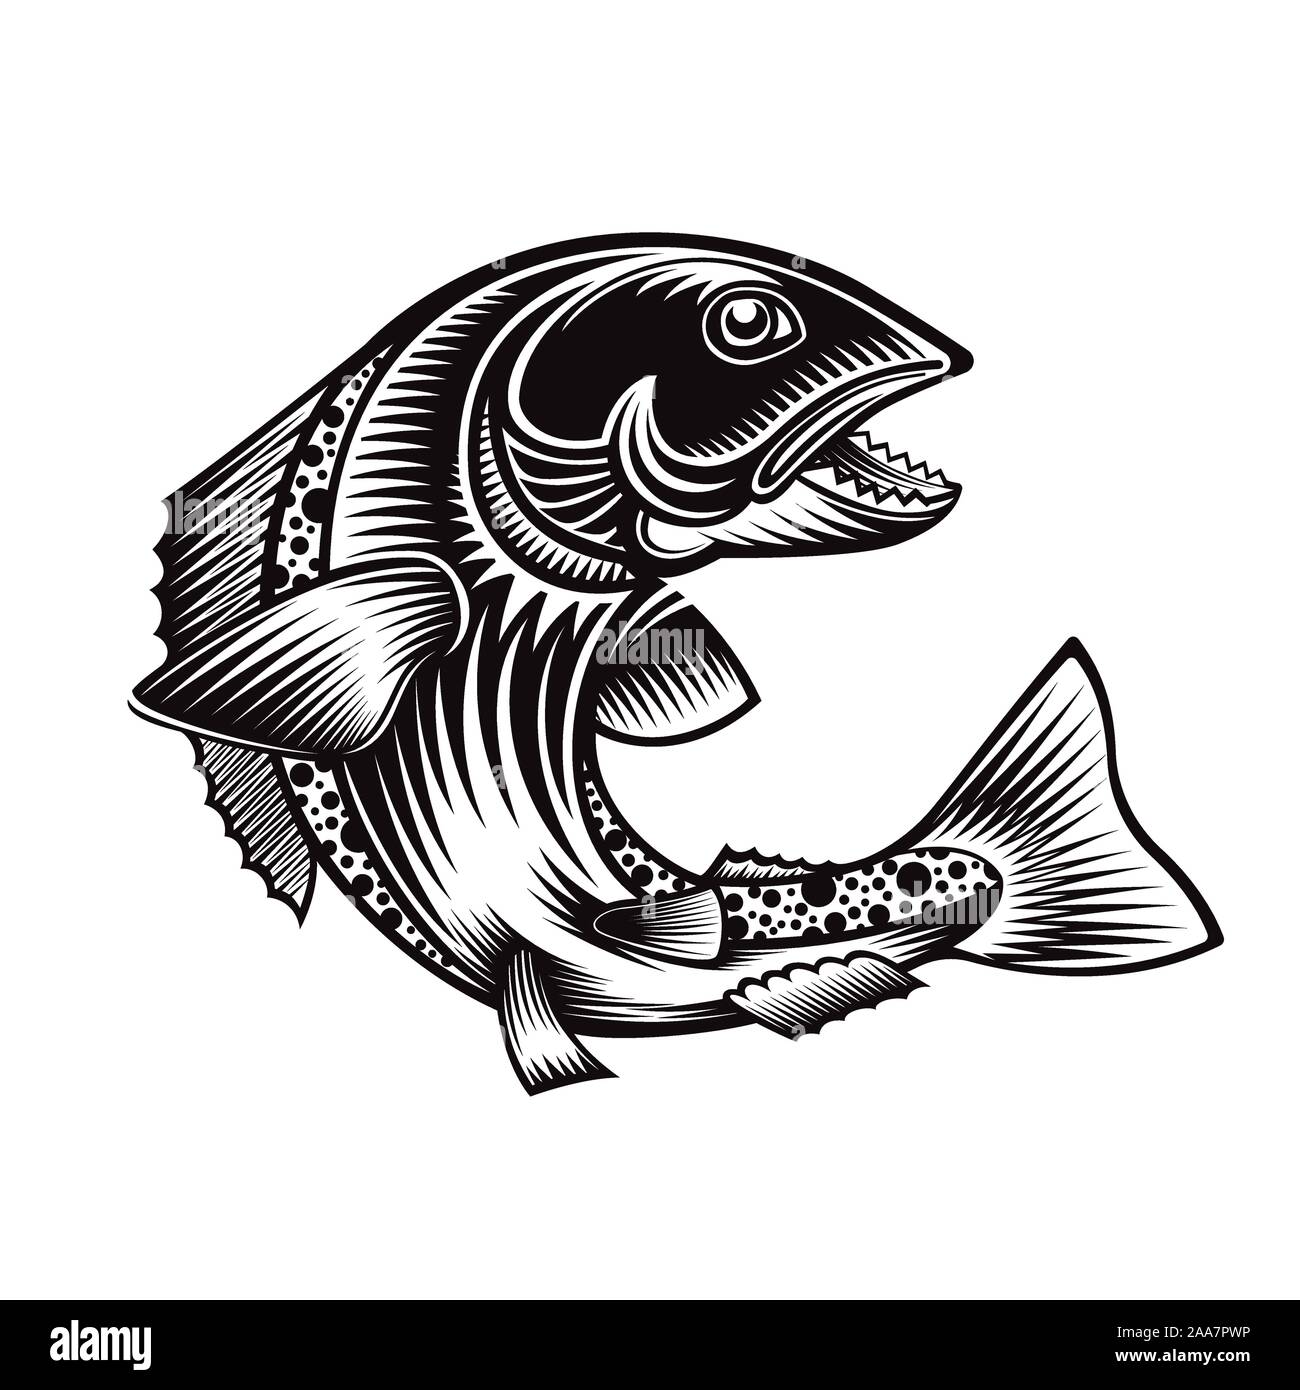 Salmon Mascot Banque D Image Et Photos Alamy